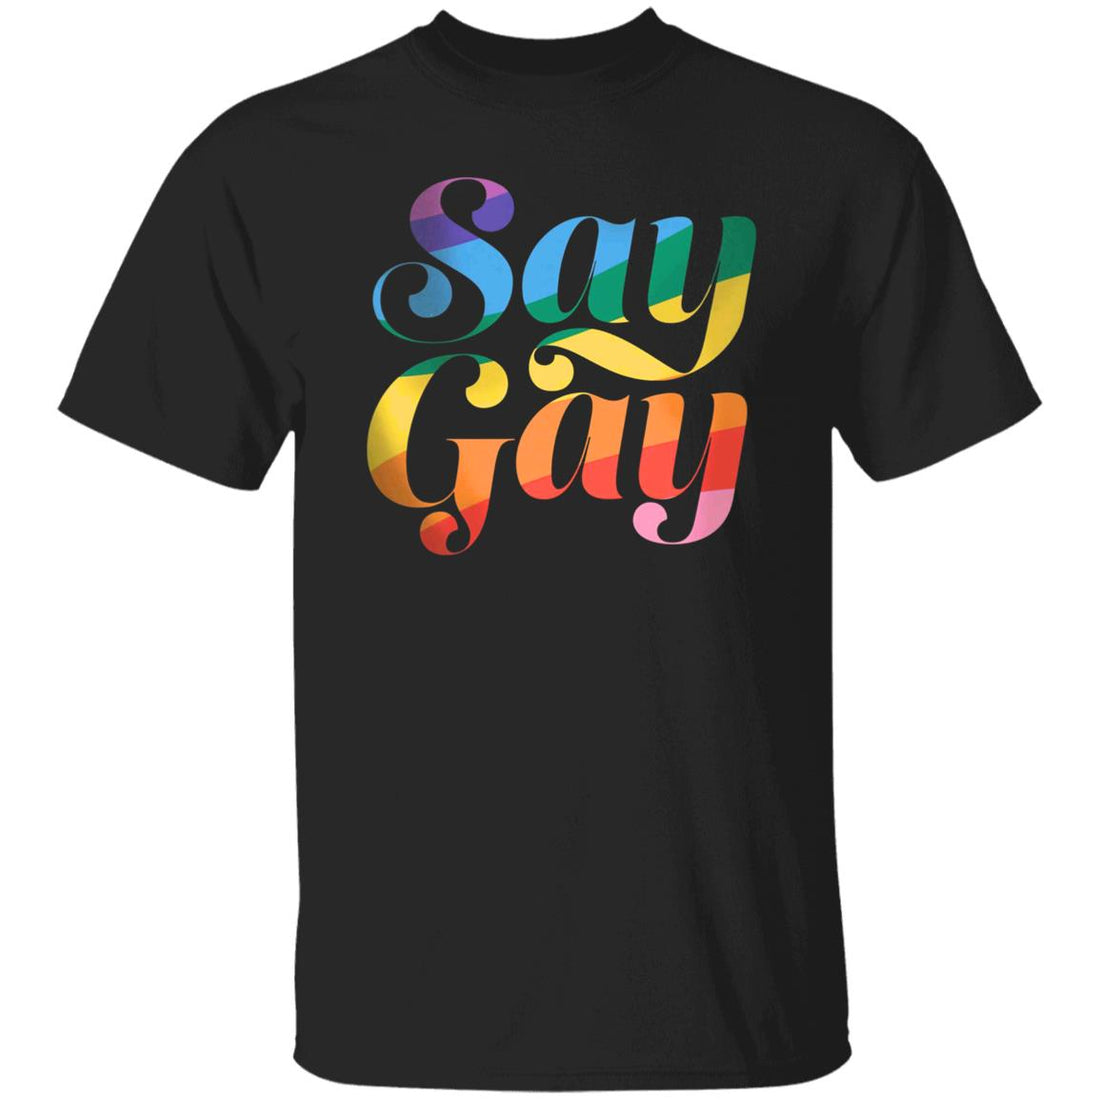 Say Gay Gender Neutral Tee